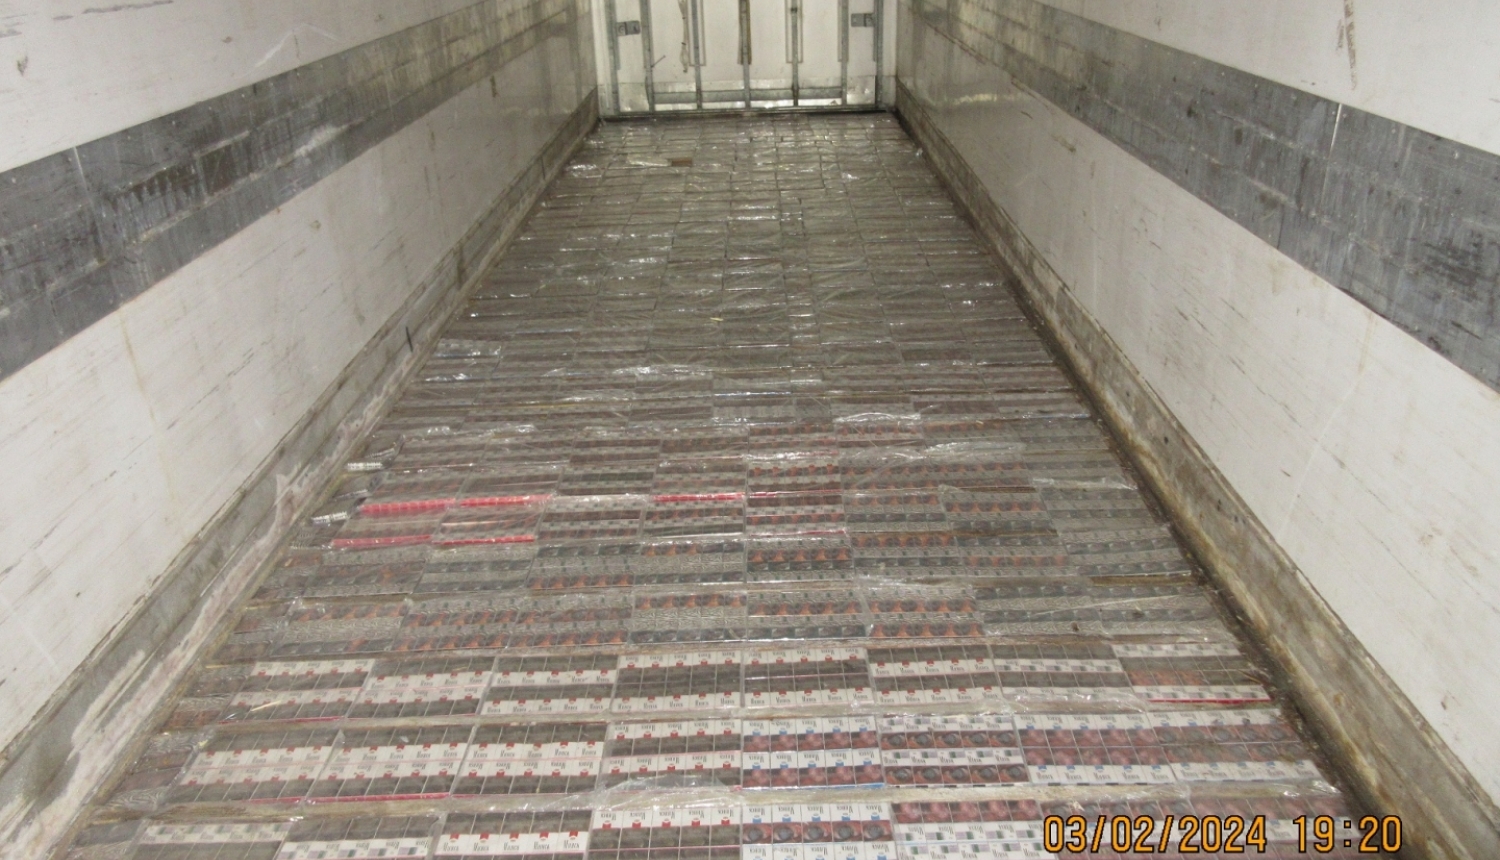 Puspiekabes grīdā izveidotā slēptuvē atrodas 170 tūkstoši kontrabandas cigarešu.